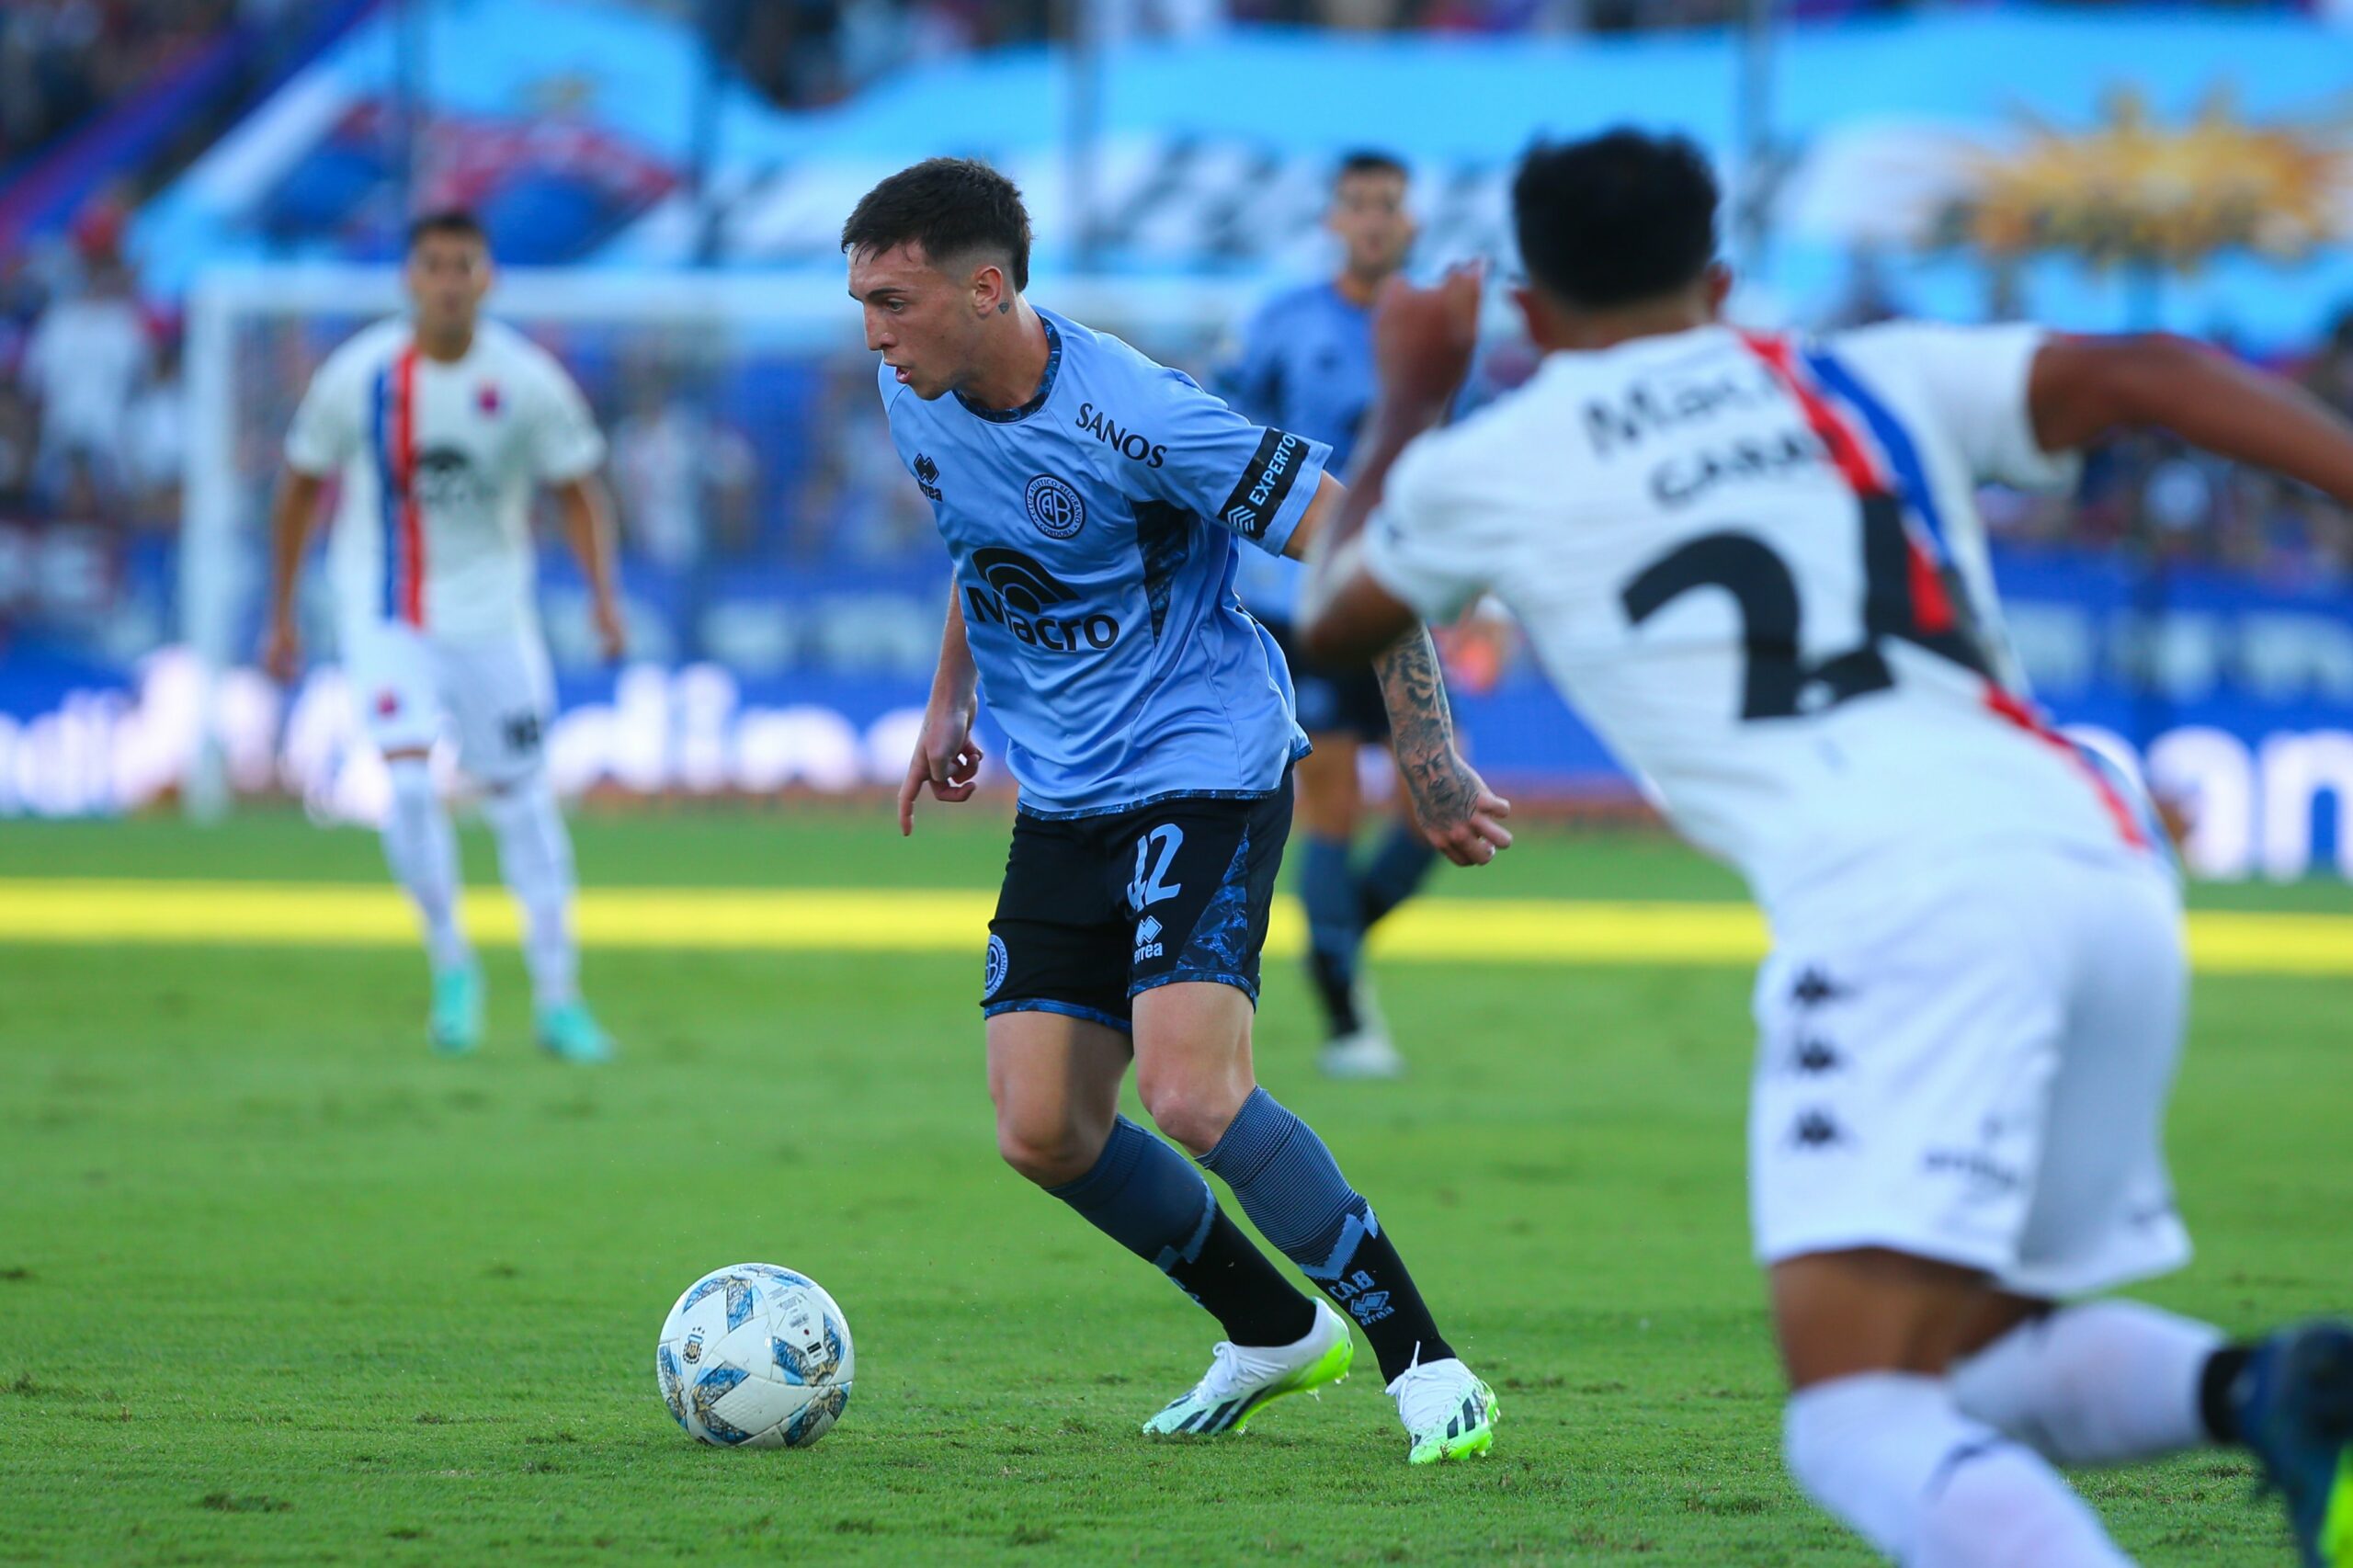 Lo que viene para Belgrano: el debut en la Copa Sudamericana | Canal Showsport